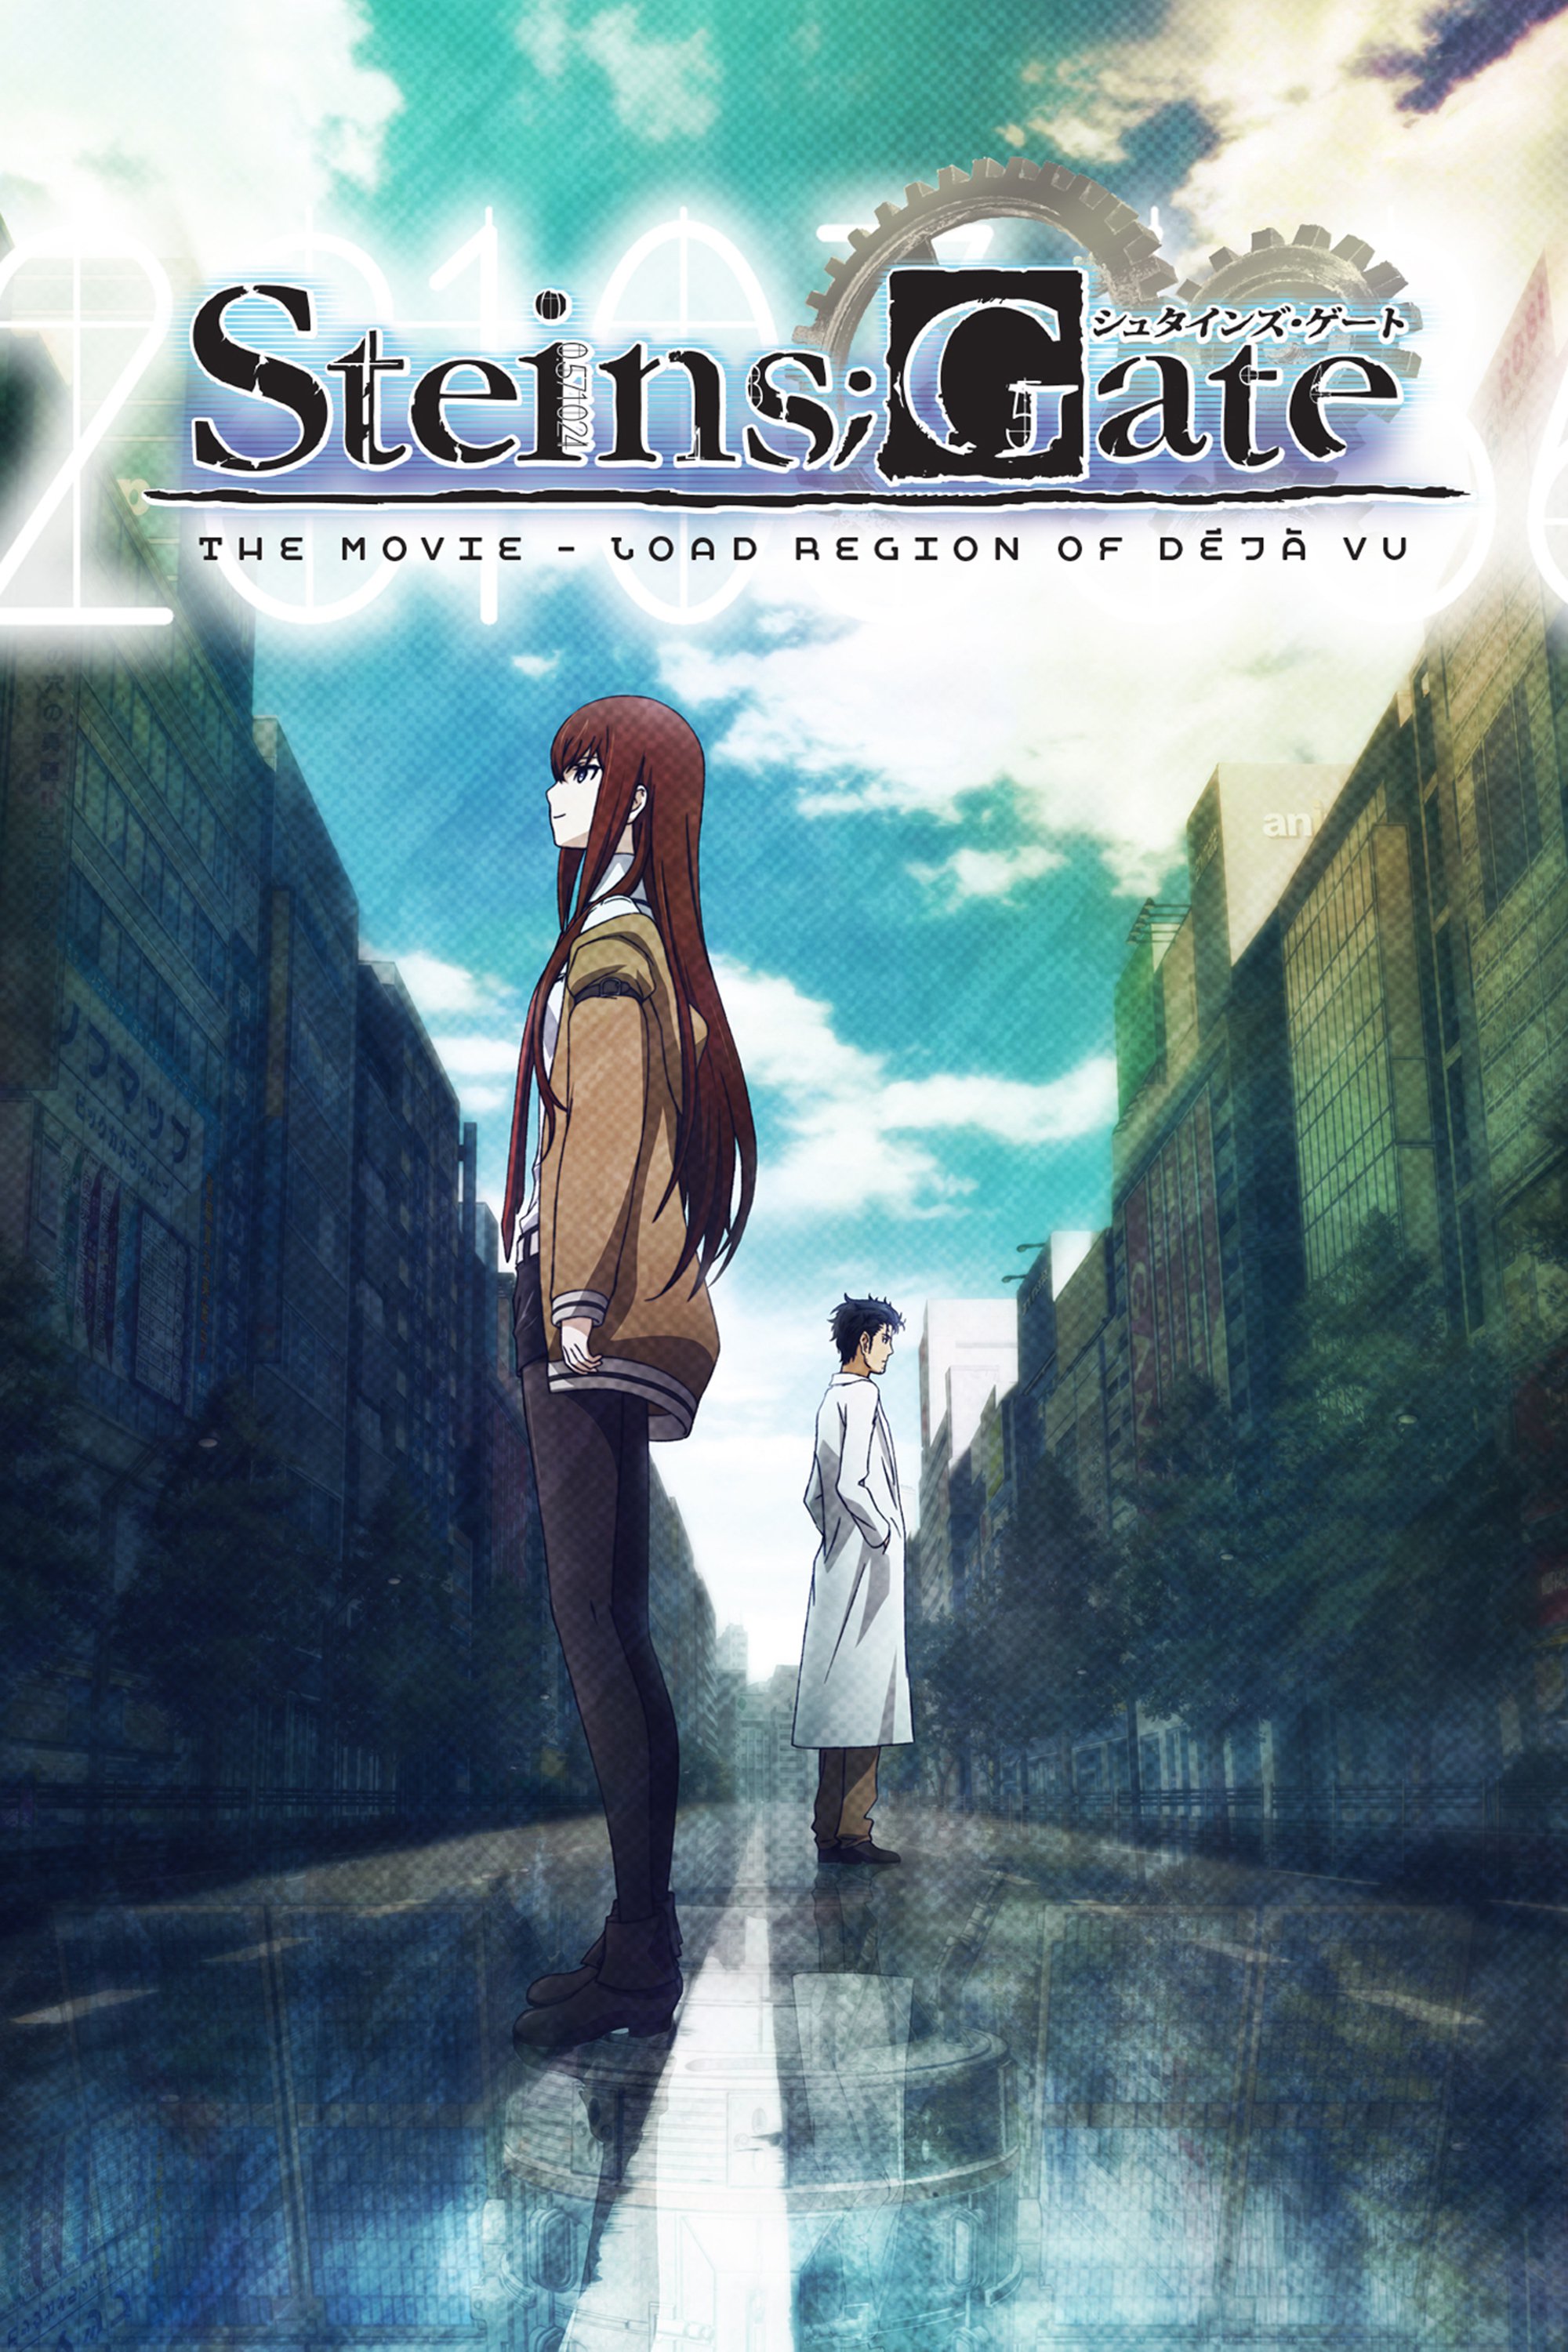 Steins Gate Fuka ryouiki no dejavu (2013) สไตนส์เกท ปริศนาวังวนแห่งเดจาวู - ดูหนังออนไลน